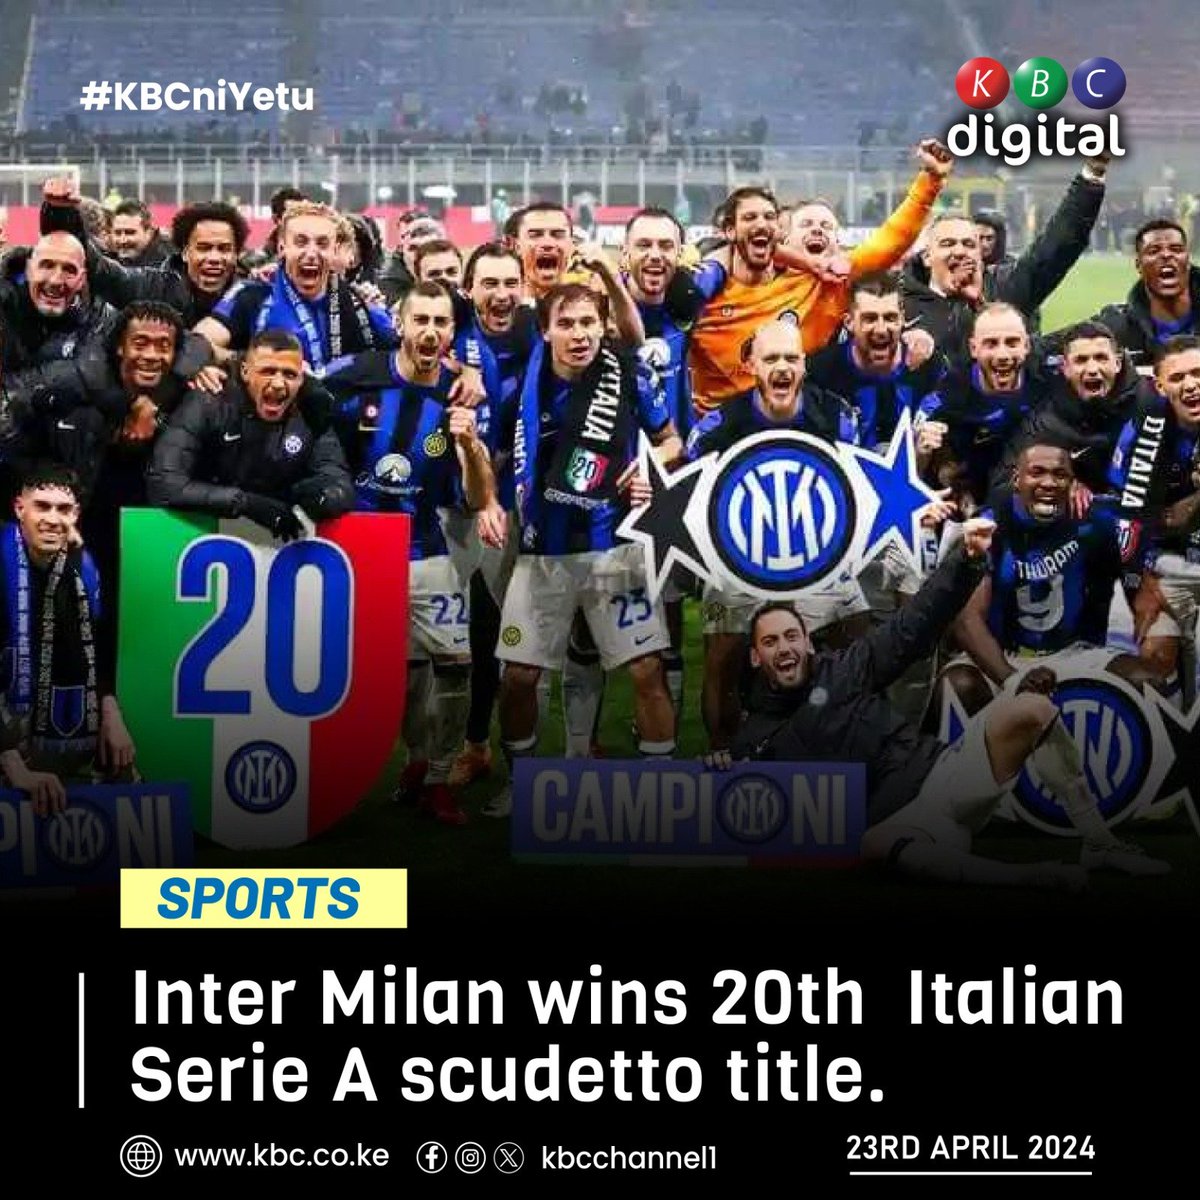 Inter Milan wins 20th Italian Serie A scudetto title. #KBCniYetu ^RO